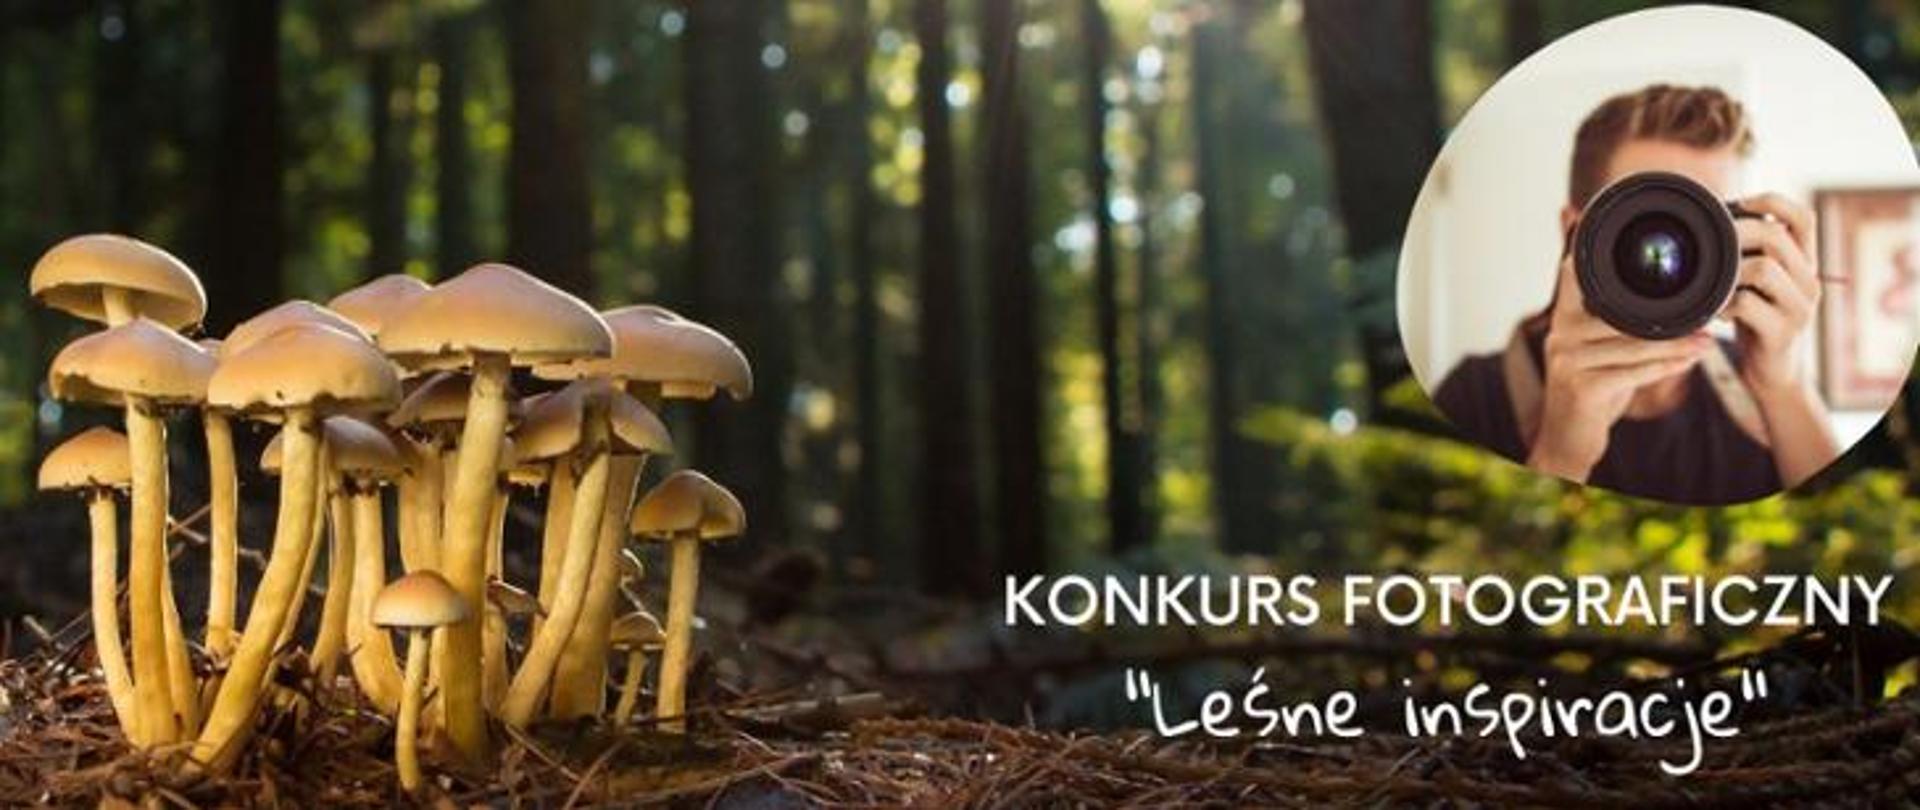 Skupisko grzybów w lesie w runie leśnym, osoba z obiektywem aparatu fotograficznego przy oku, napis: konkurs fotograficzny Leśne inspiracje